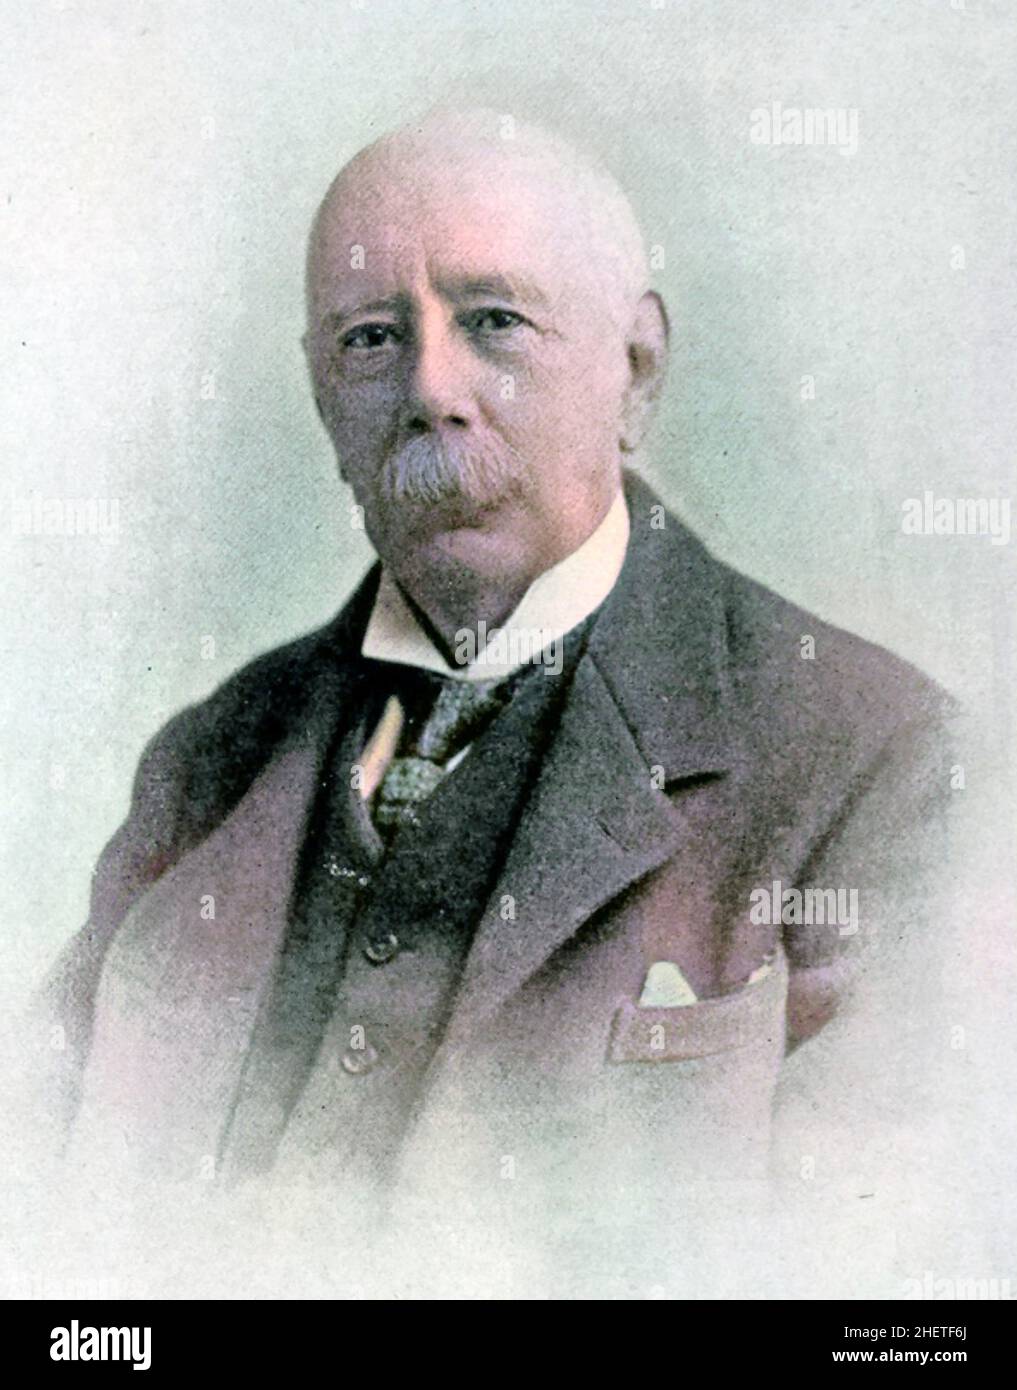 HENRY RIDLEY (1855-1956) englischer Botaniker und Geologe, der die Gummiproduktion in Malaya förderte Stockfoto